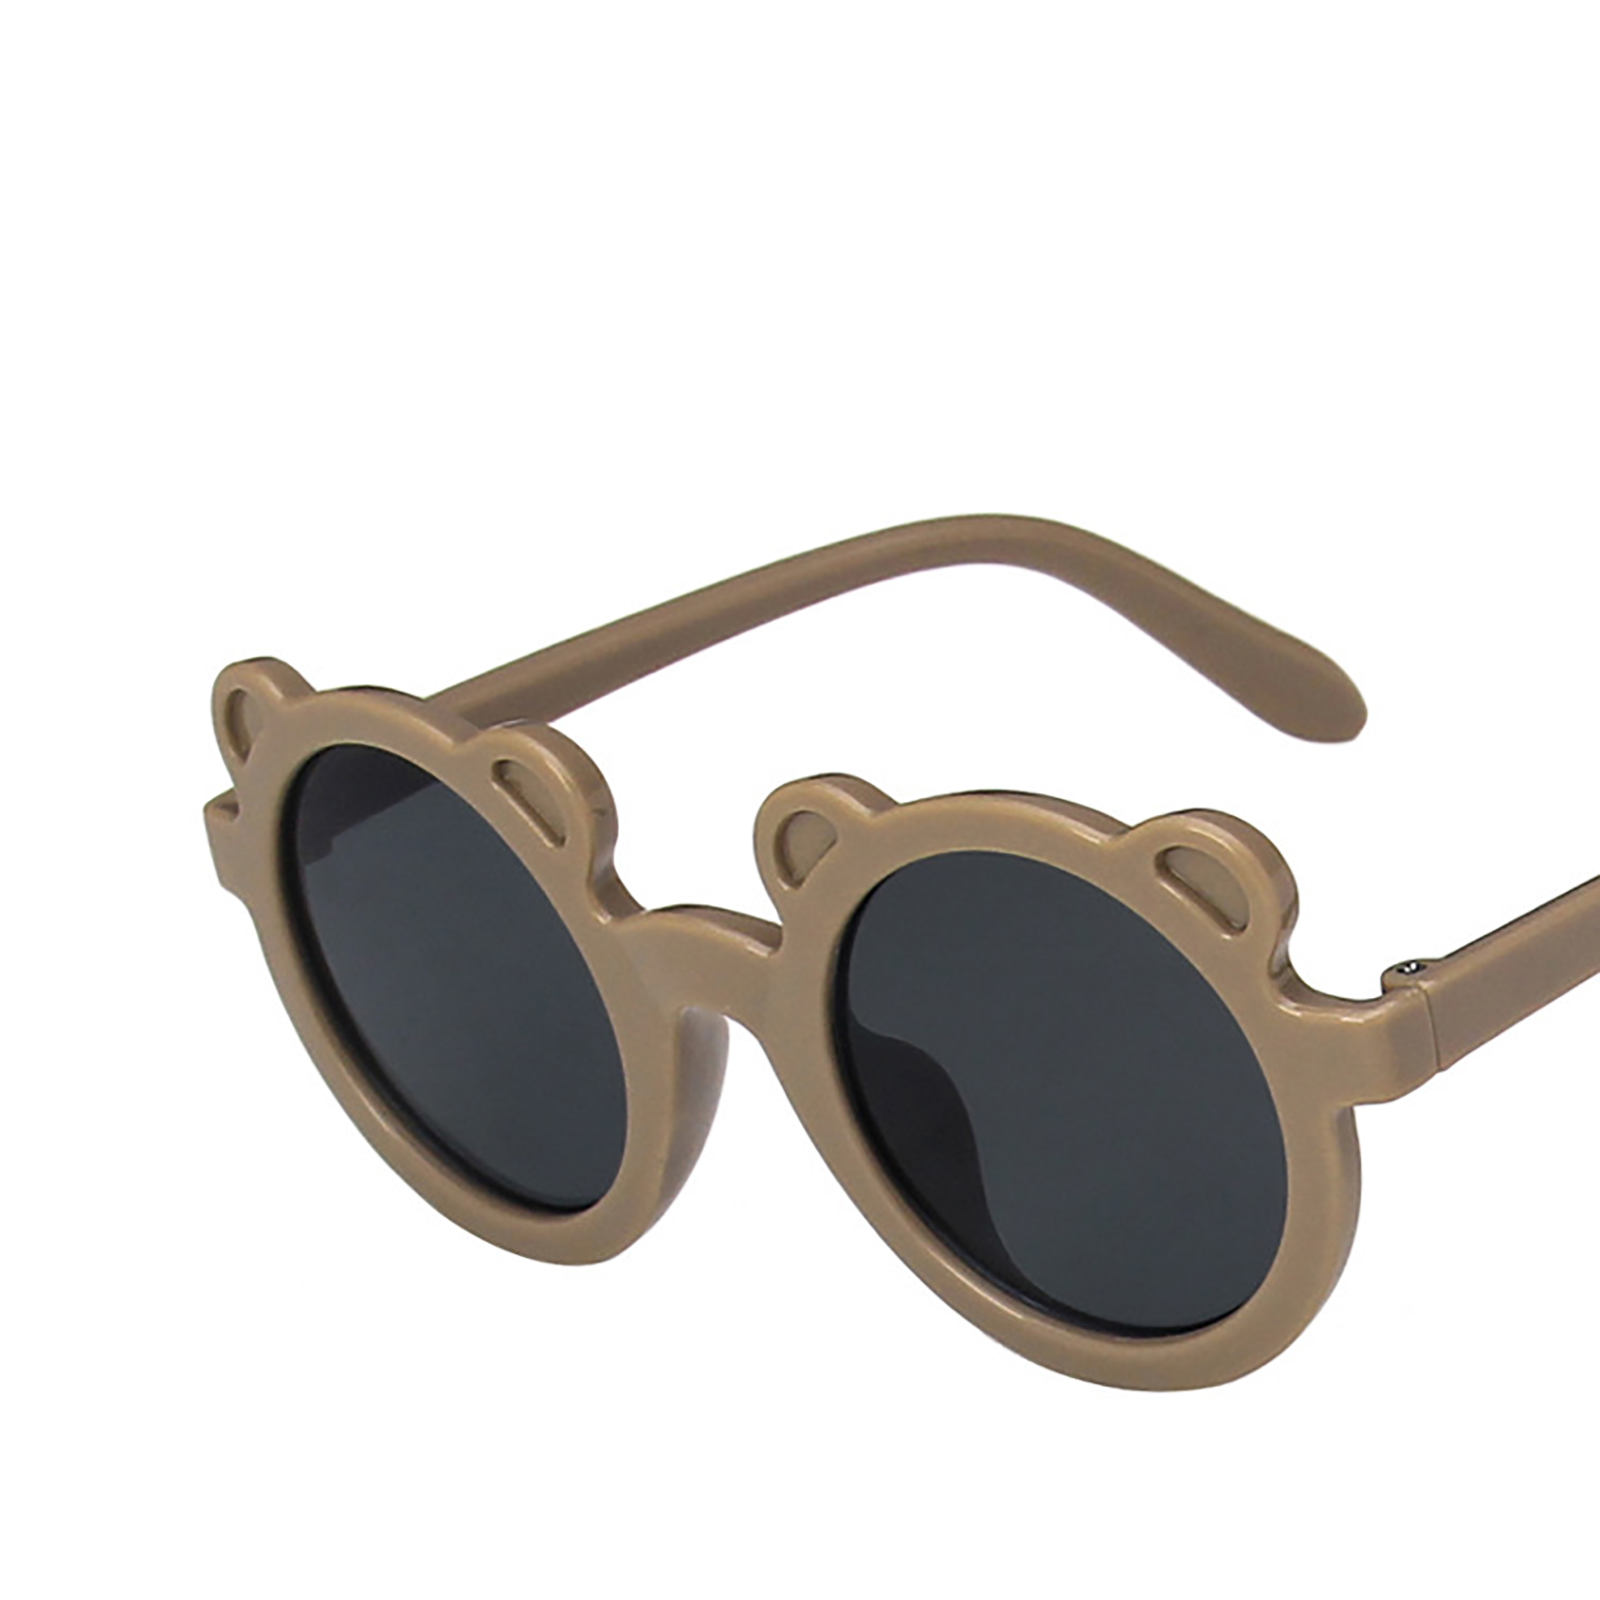 Children Sunglasses Round Frame Bear Ear Sunglasses for Kids Boys Girls - image 2 of 6